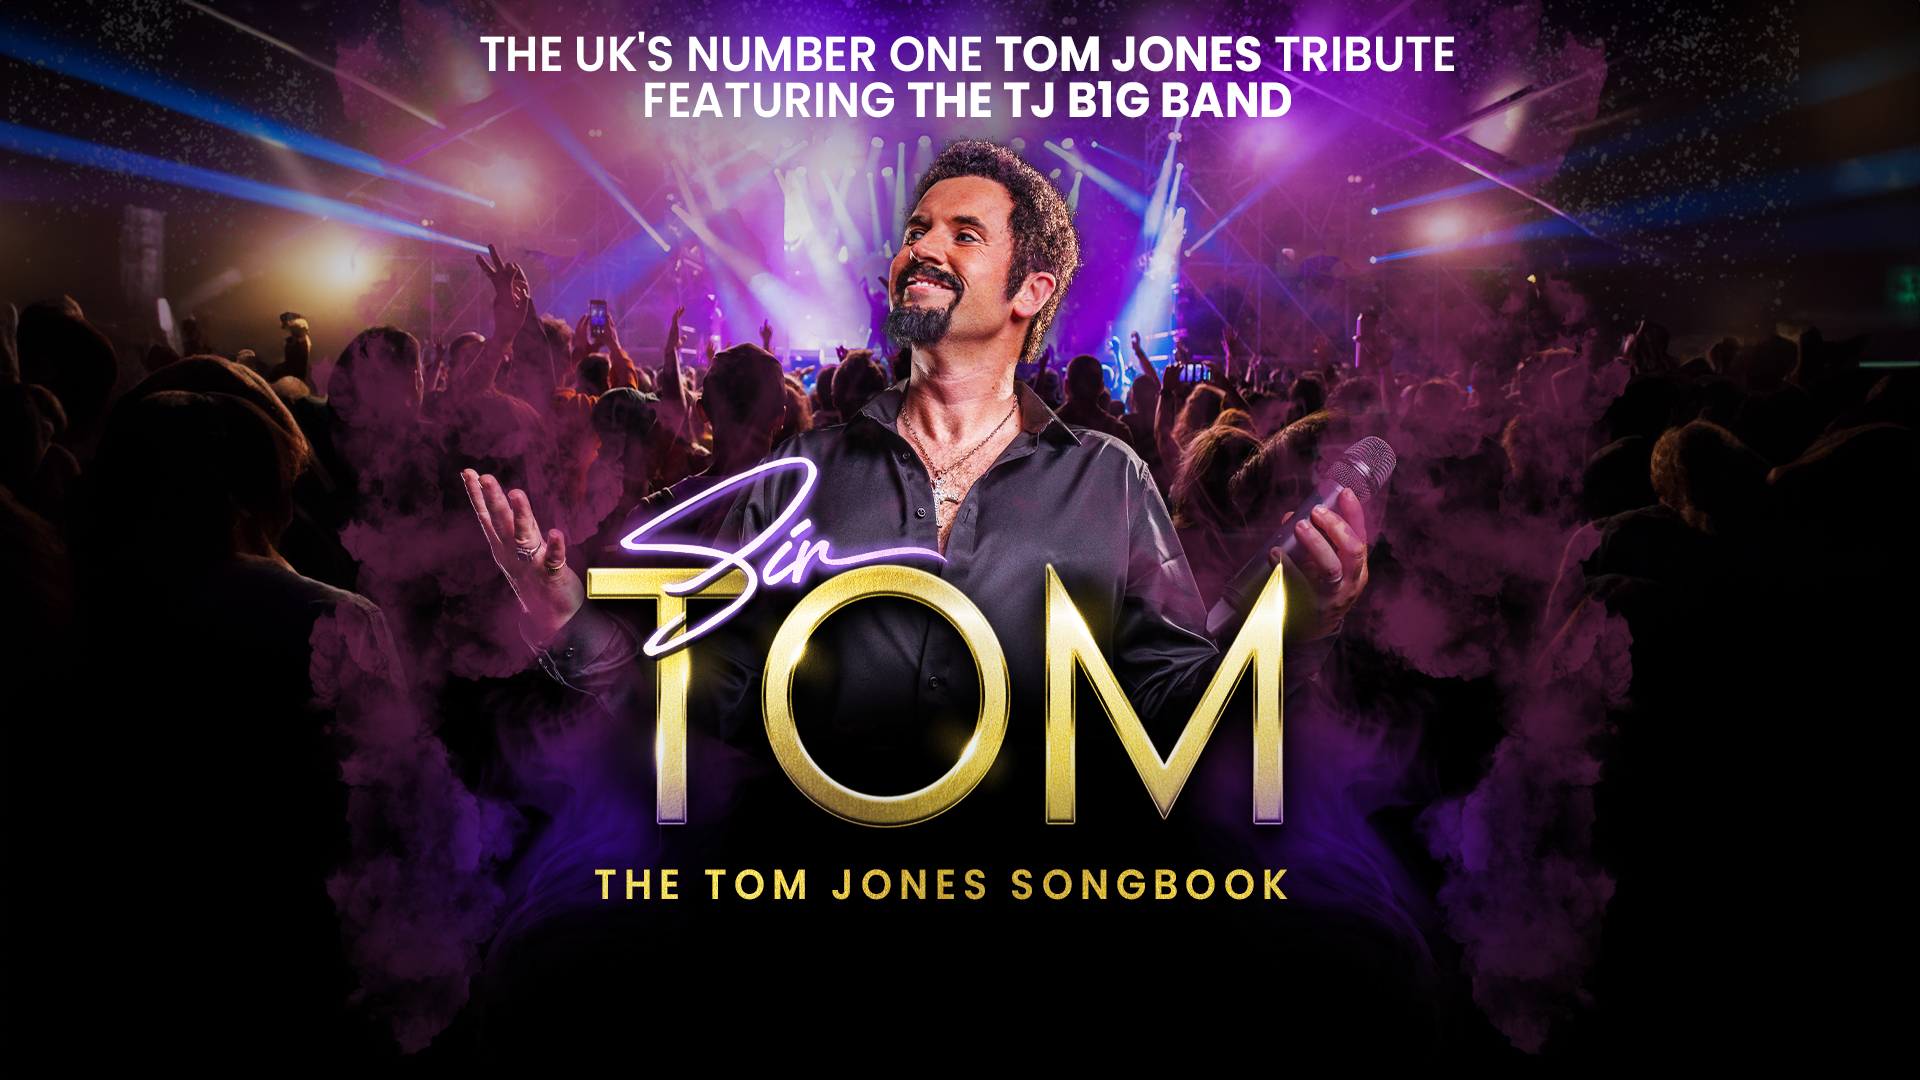 Sir Tom: The Tom Jones Songbook